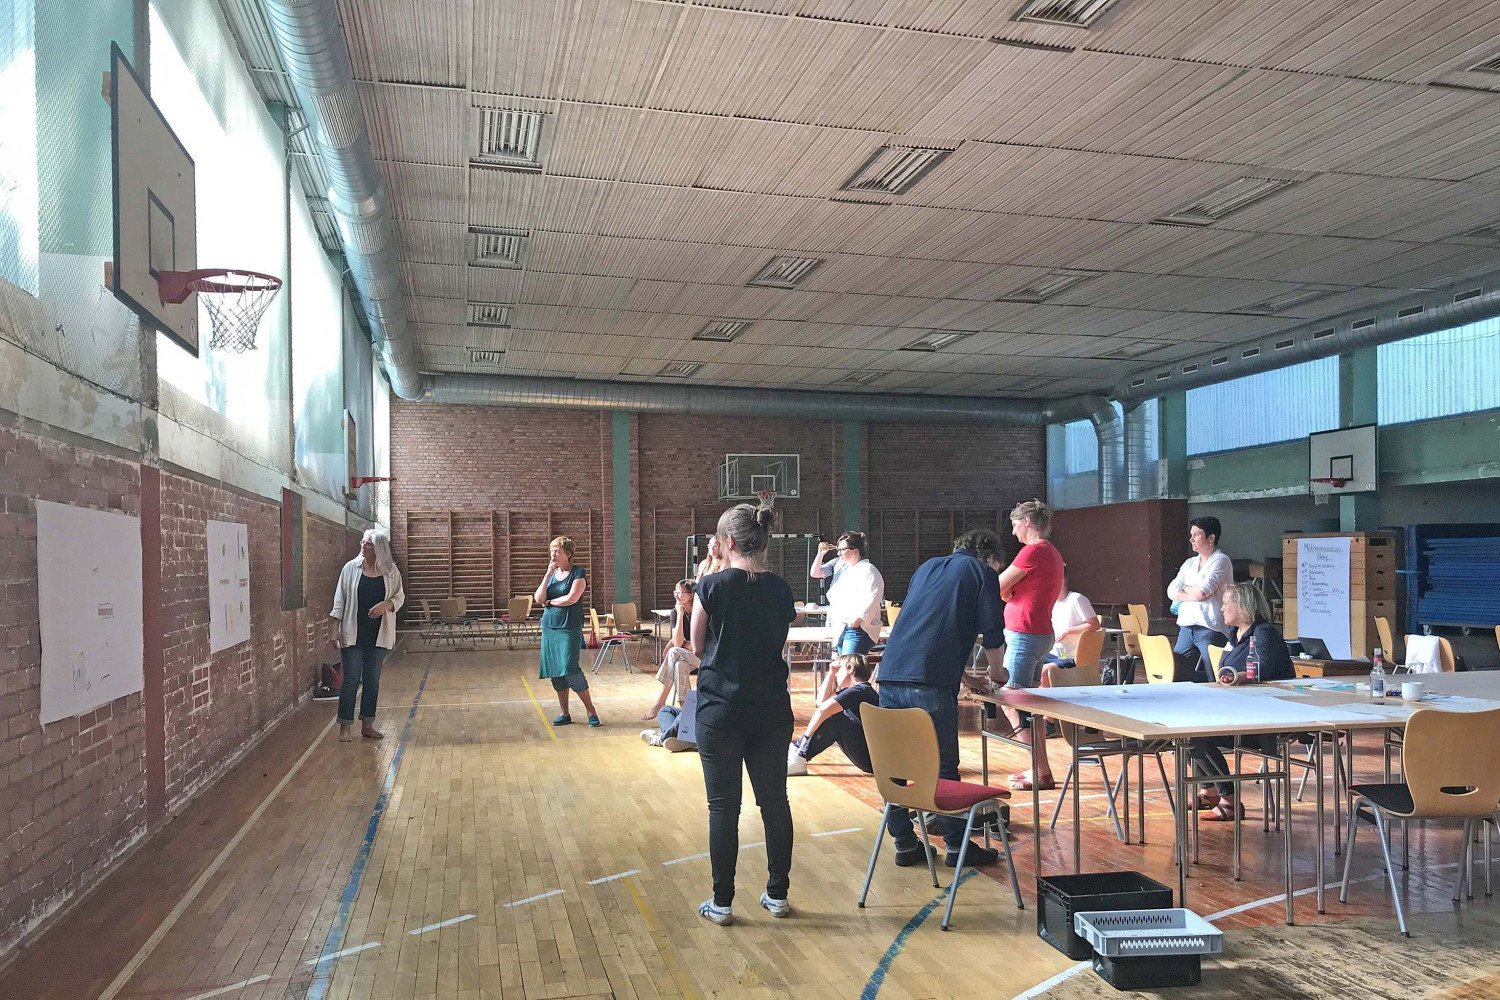 Etwa 15 Personen arbeiten in der Turnhalle an Tischen und präsentieren die Ergebnisse ihres Workshops.